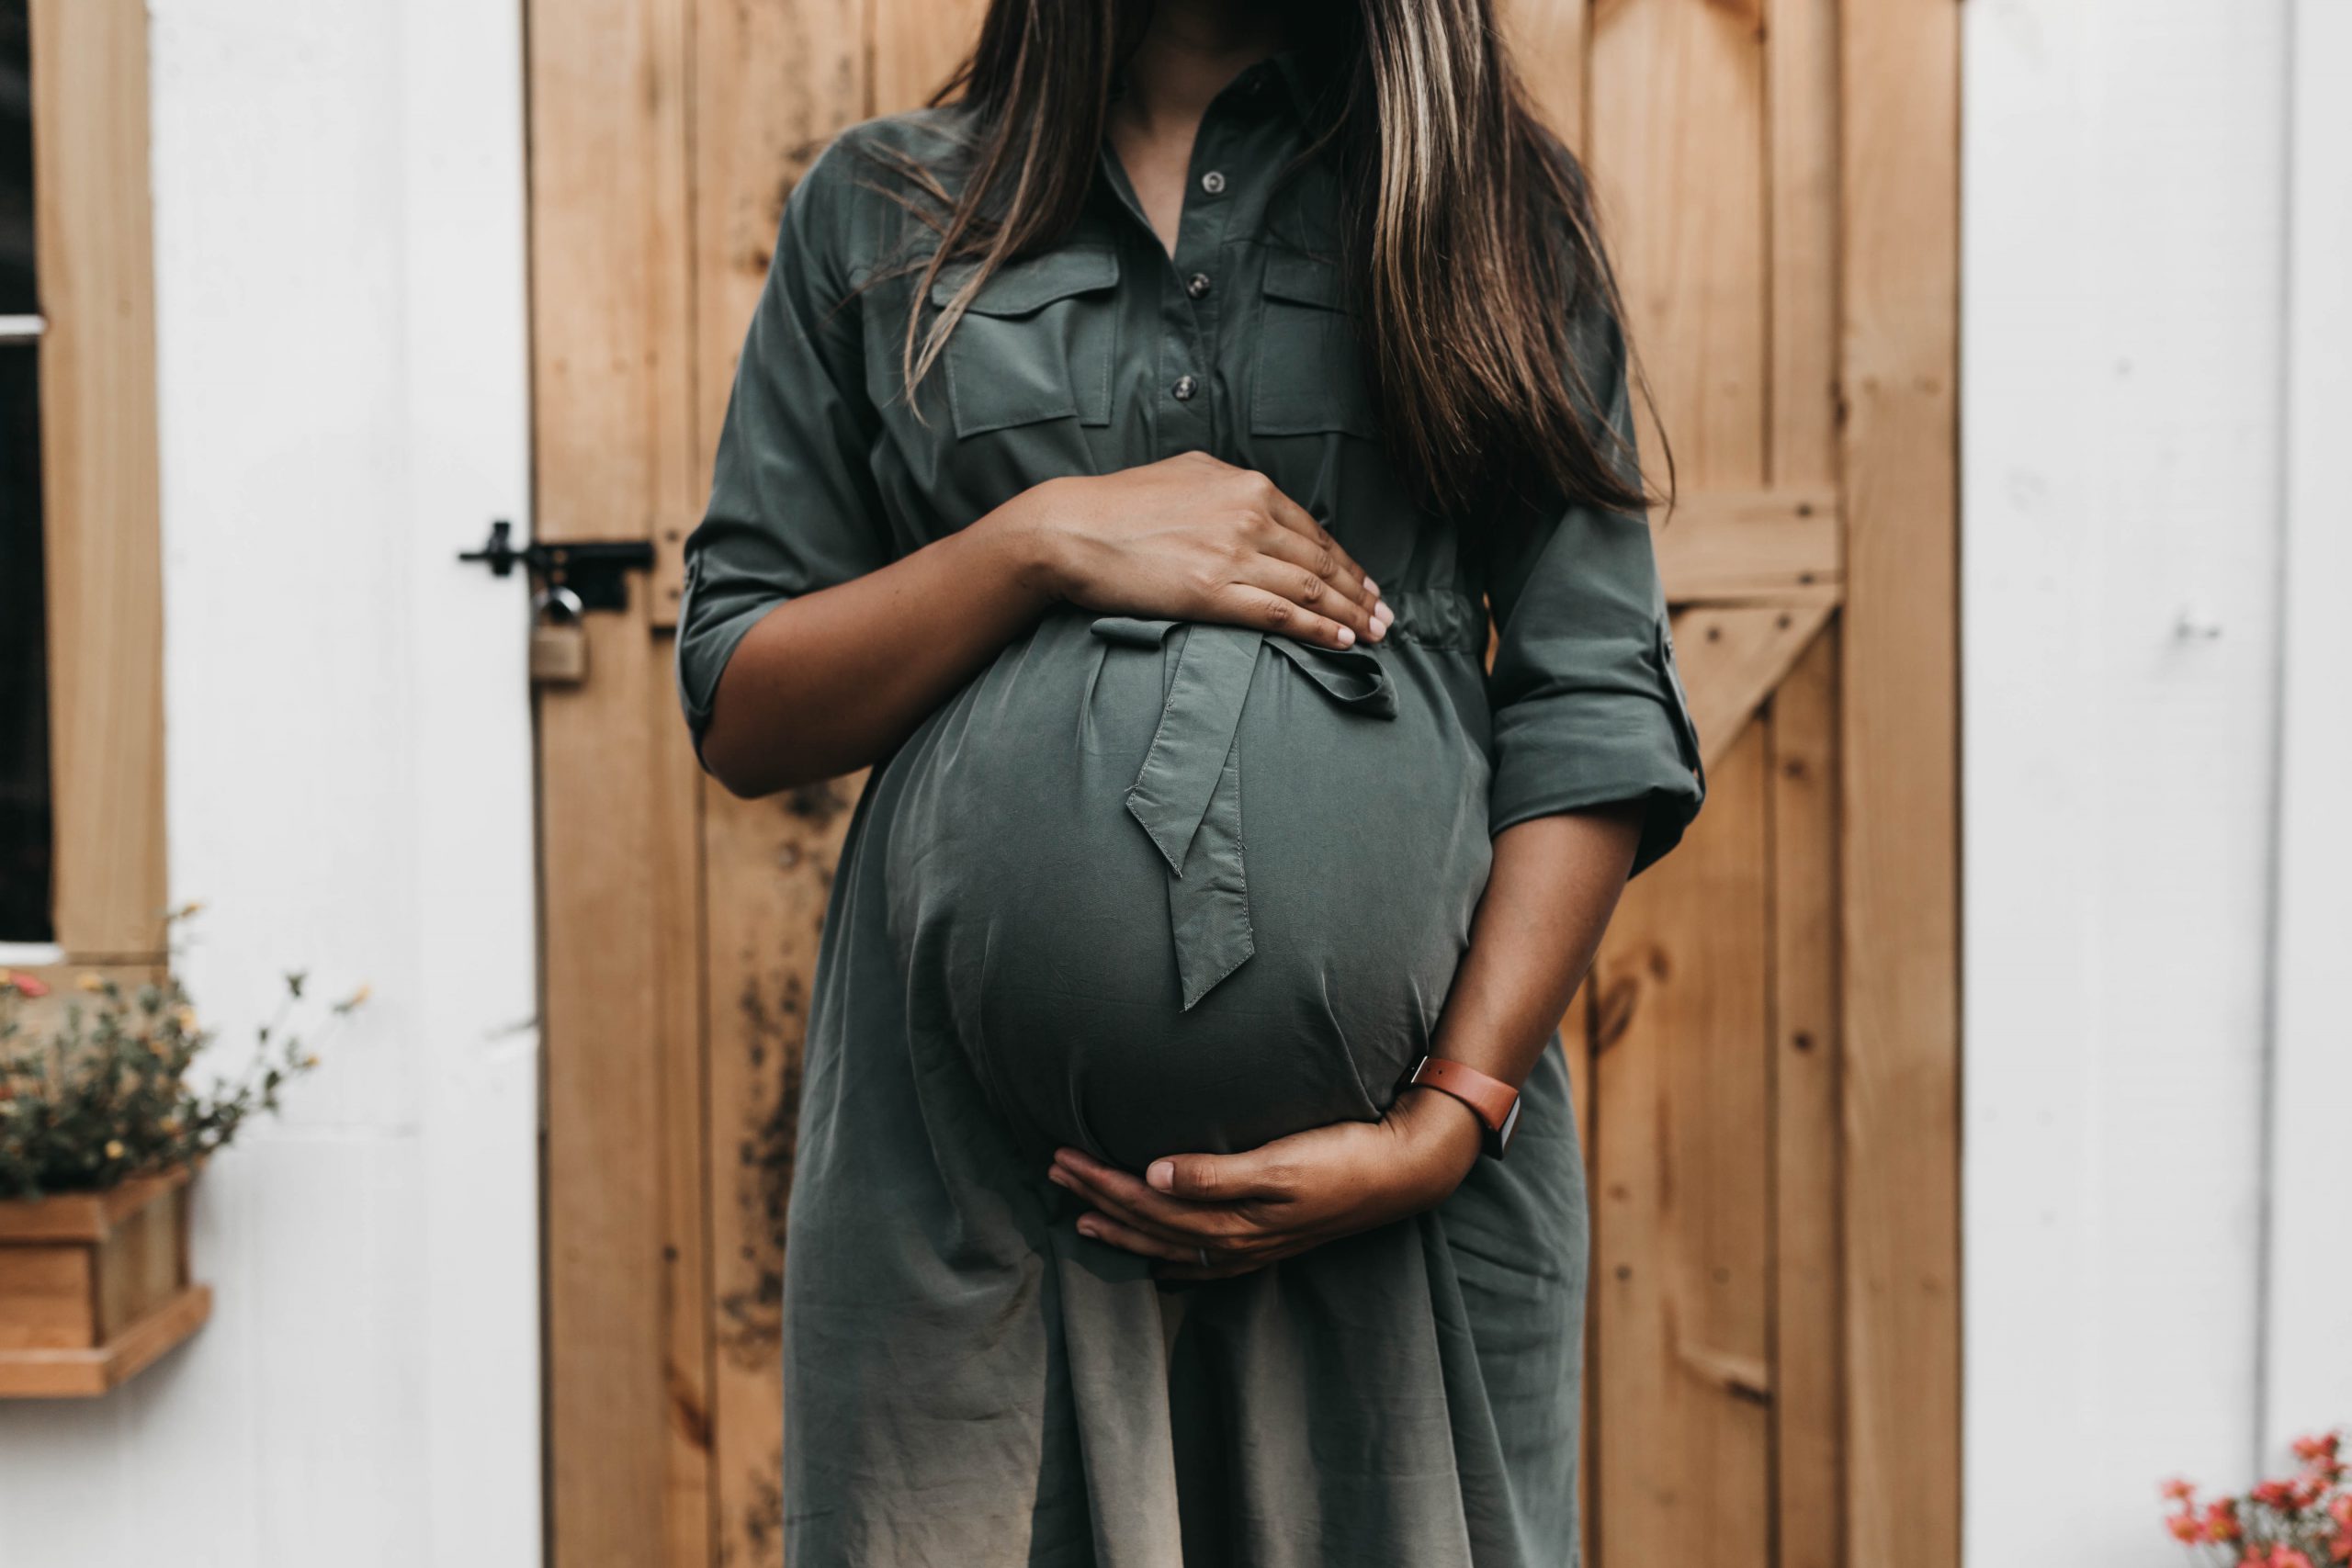 Kan Je Een Or Lid Met Zwangerschapsverlof Tijdelijk Vervangen